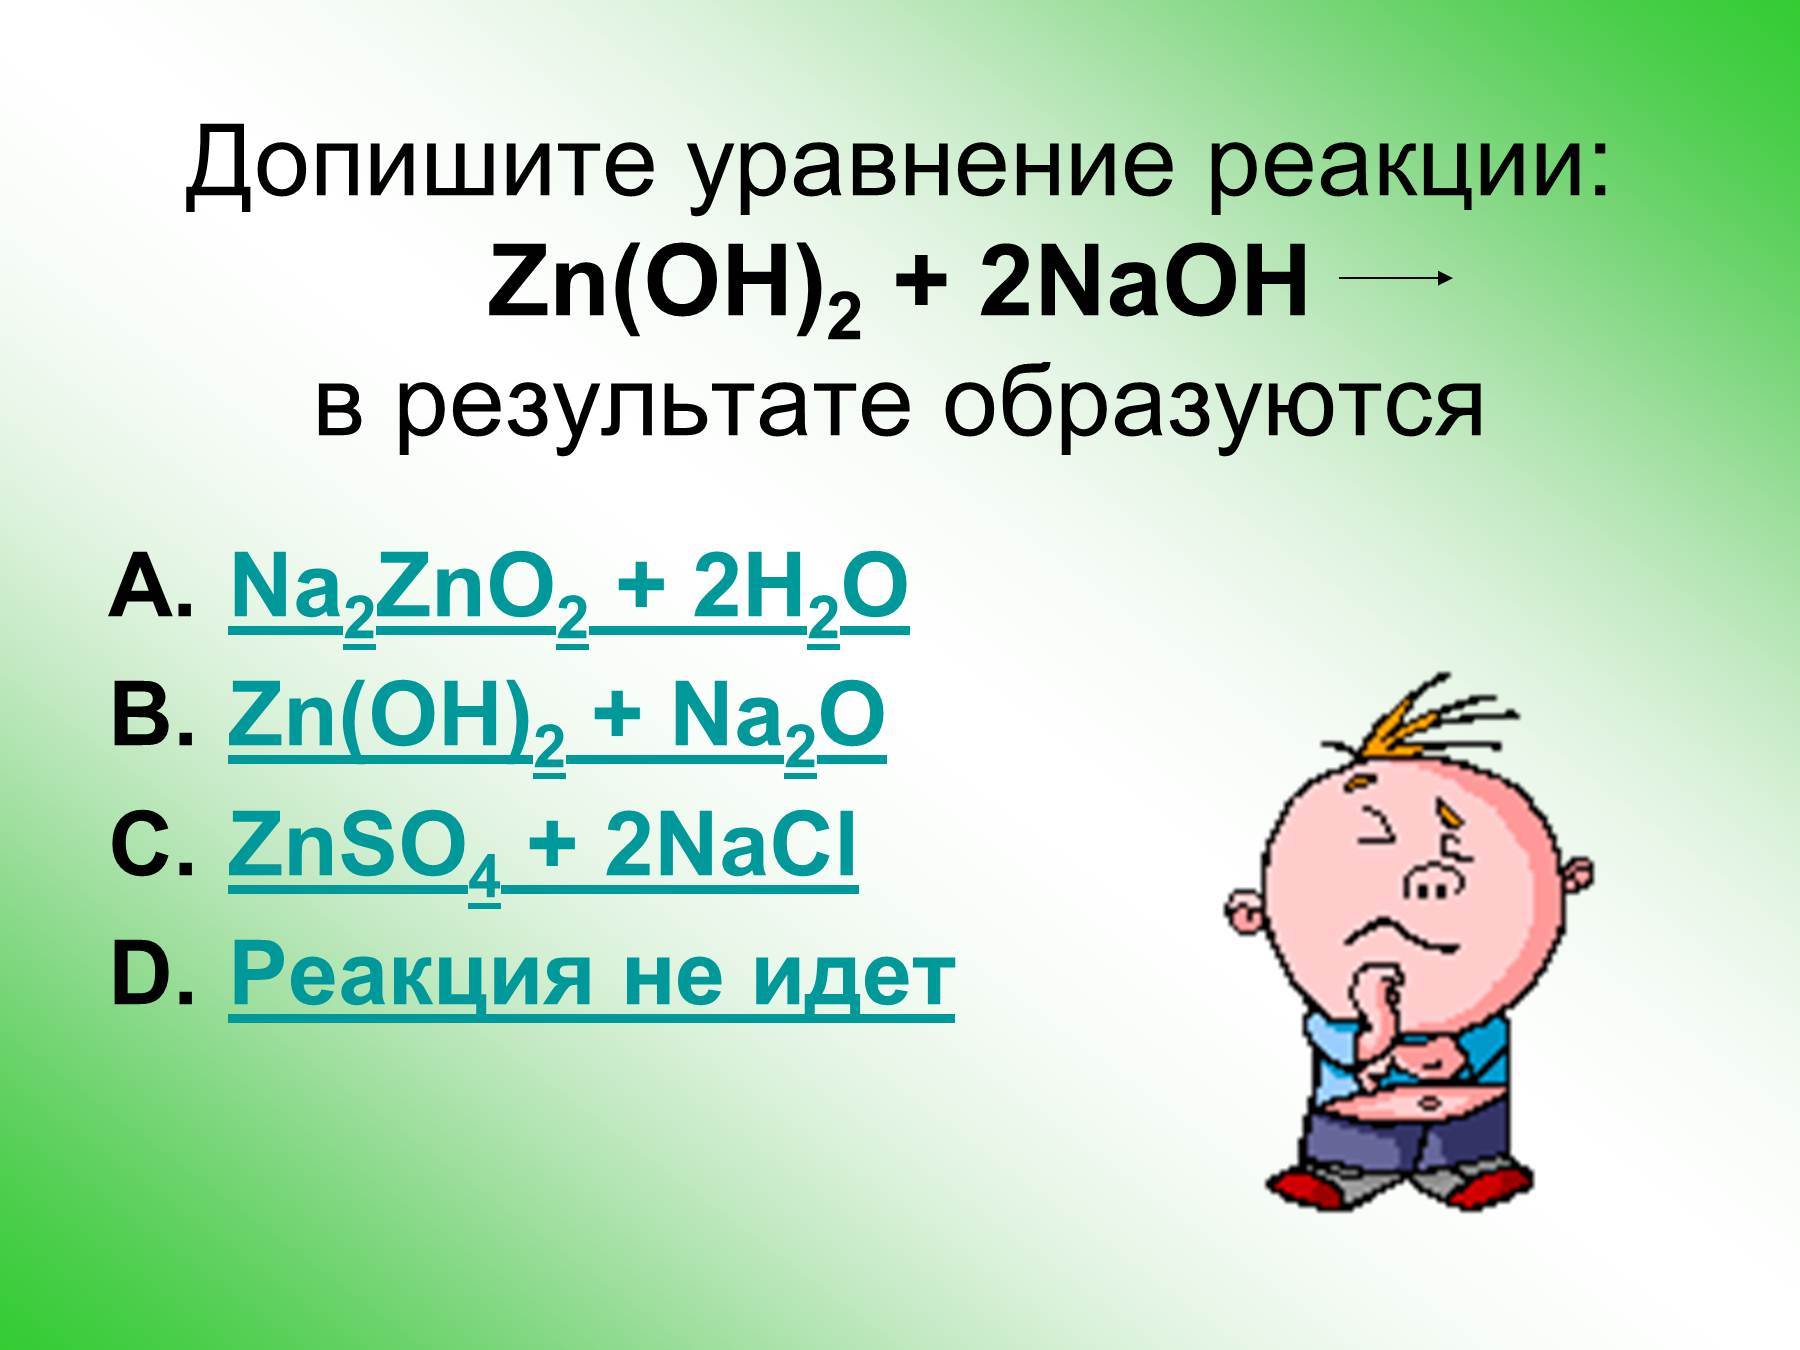 Zno naoh na2 zn oh 4. ZN Oh 2 уравнение реакции. ZN Oh 2 реакции. ZN(Oh)2. ZNO уравнение реакции.